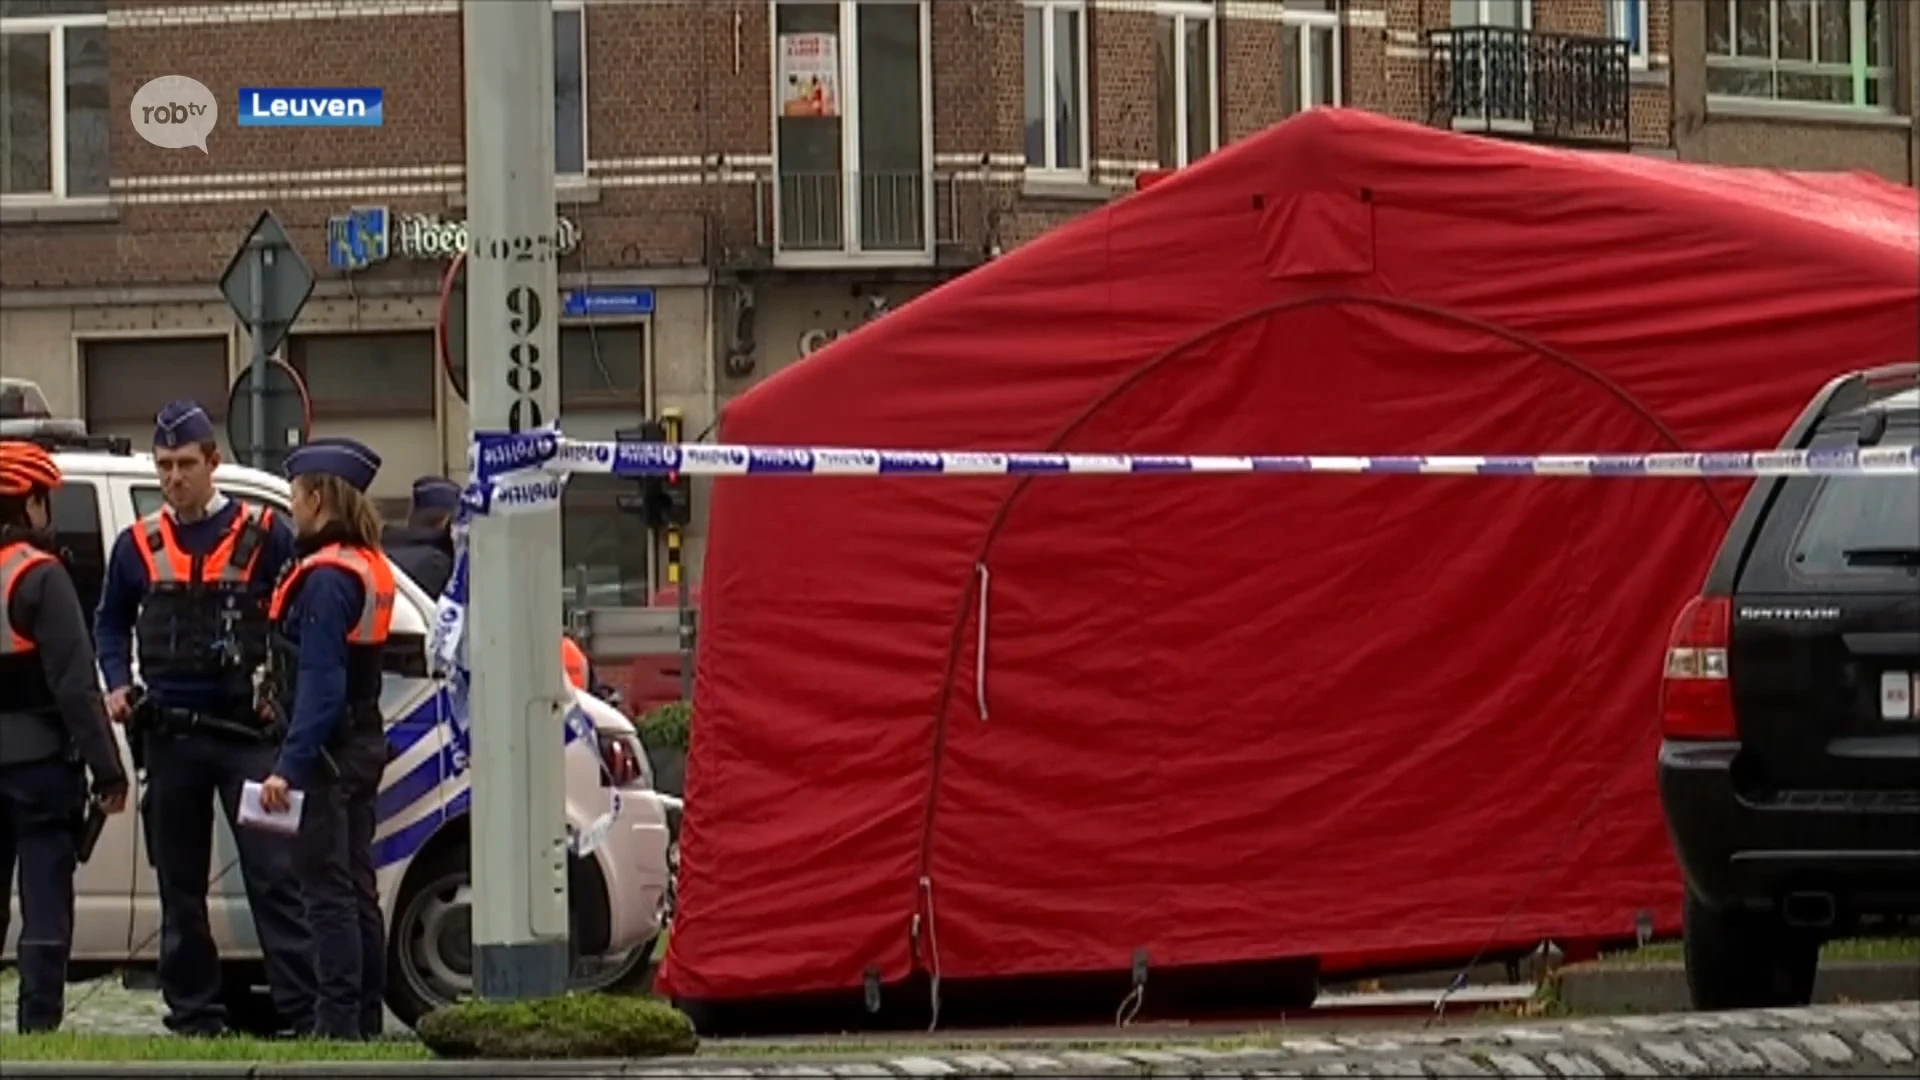 Vrouw die eind 2019 per ongeluk vriendin doodrijdt aan Parkpoort in Leuven krijgt opschorting van straf